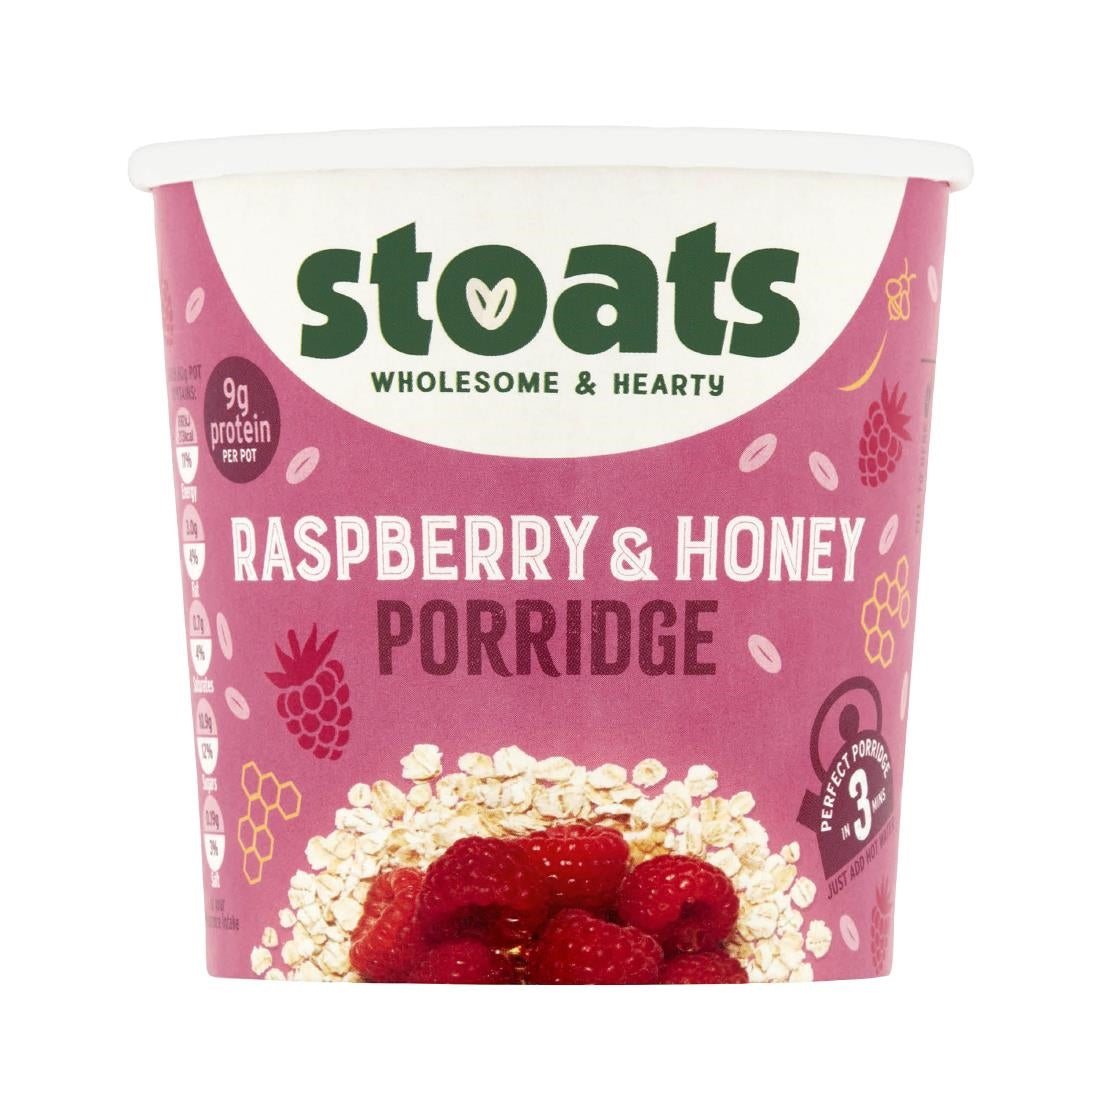 HS853 Stoats Raspberry & Honey Porridge Pots 60g (Pack of 16)